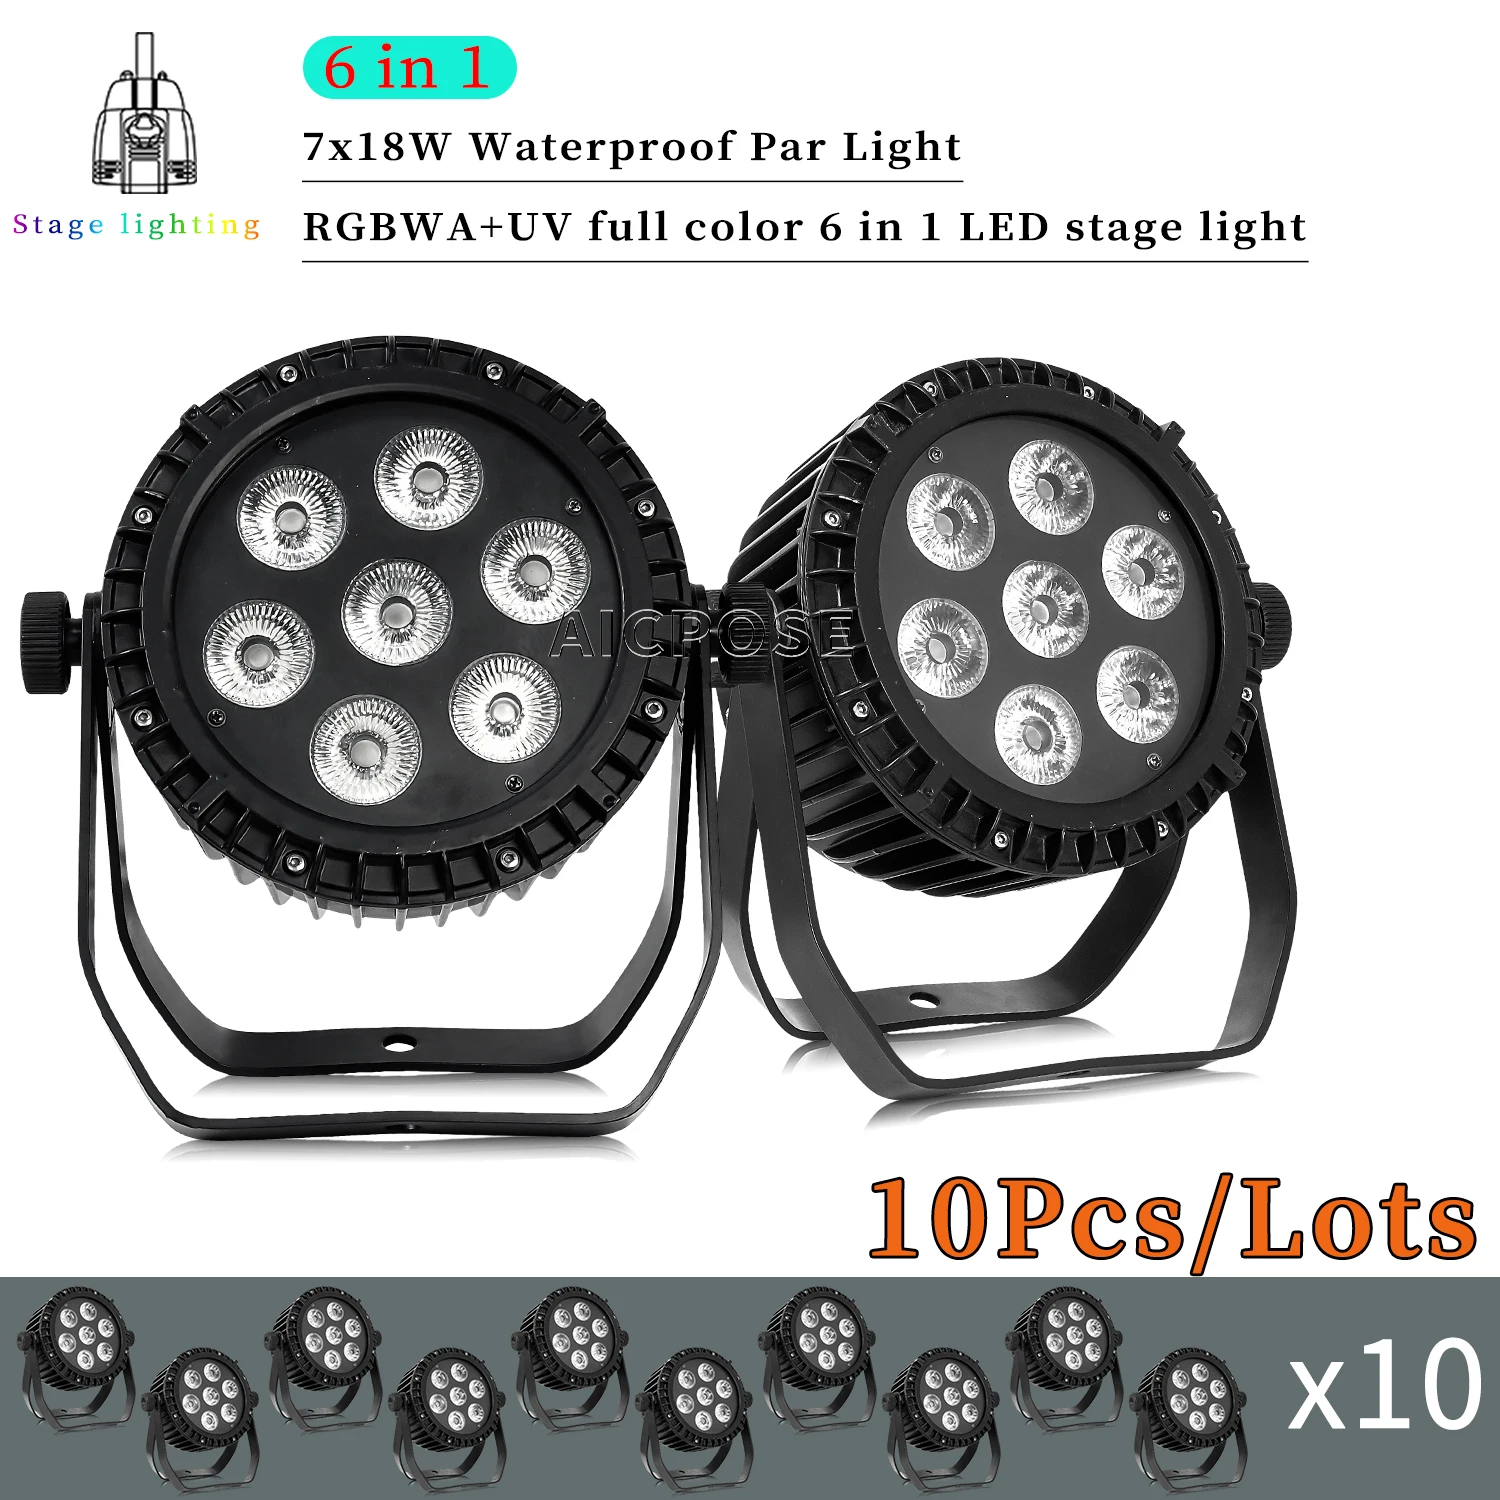 

10Pcs/Lots Outdoor Waterproof Stage Light 7x12W RGBW/7x18W RGBWA+UV 6 in 1 LED Par Light DMX Control DJ Disco Equipment Lighting